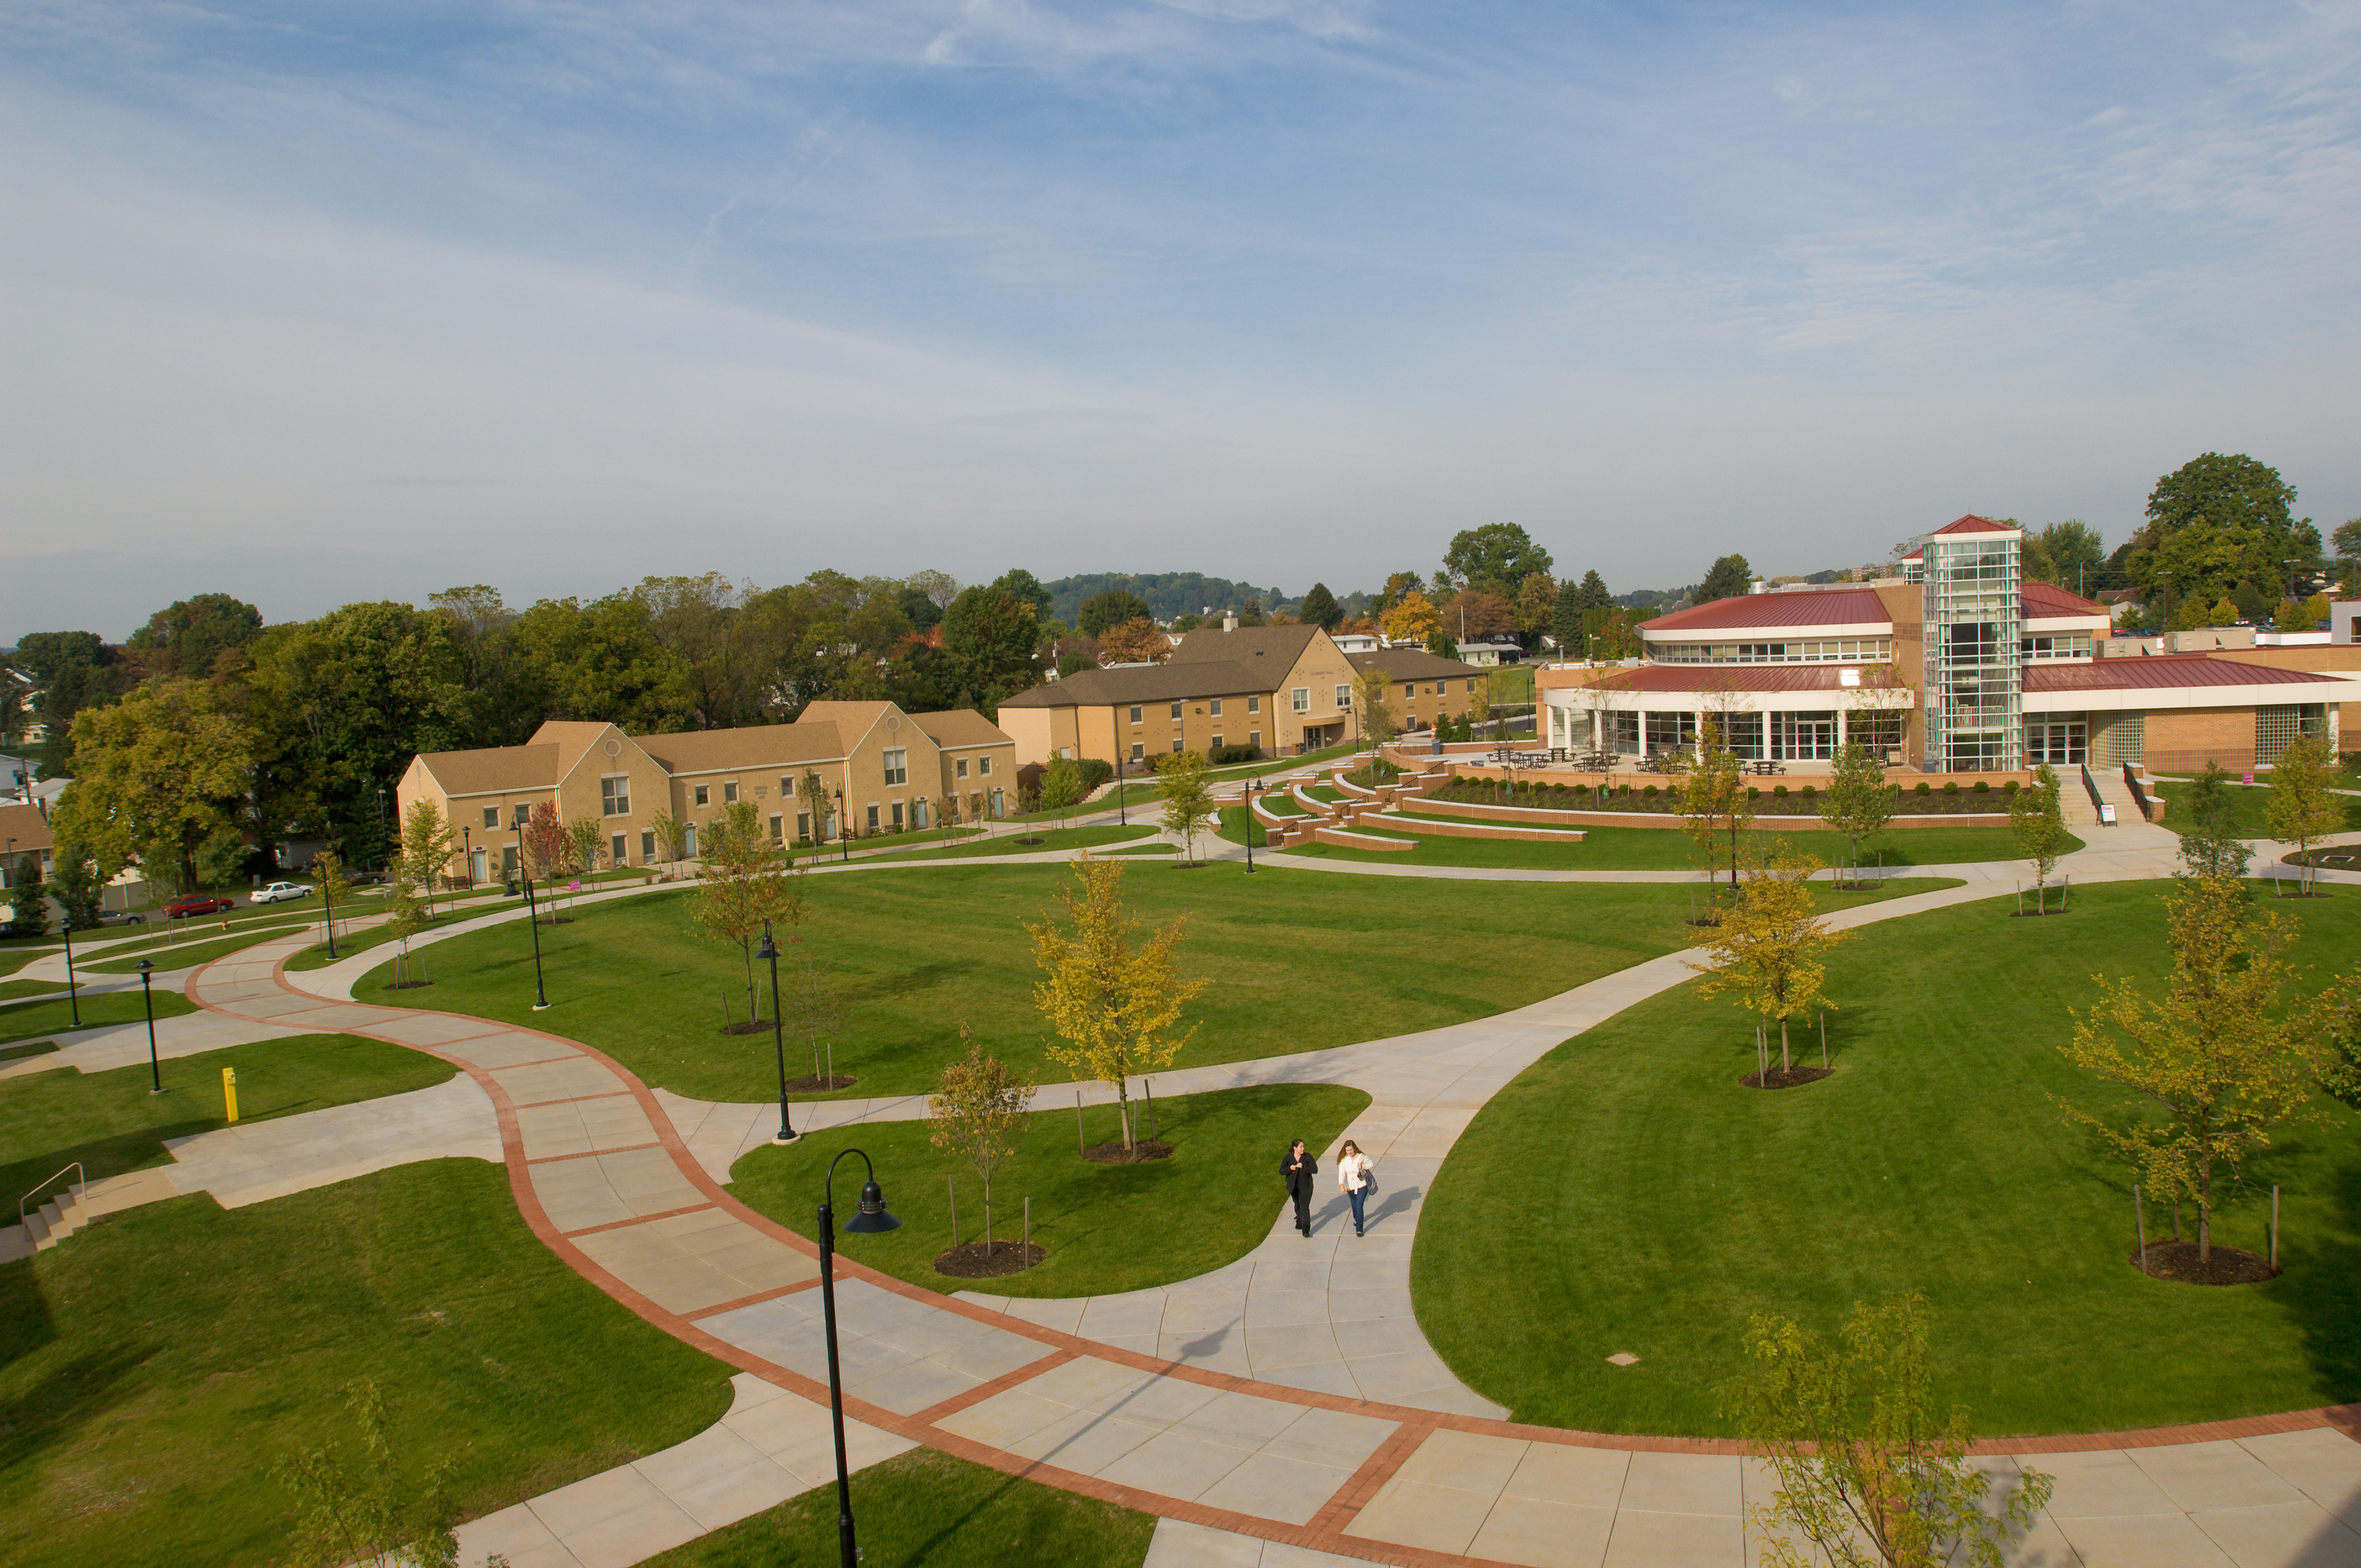 The campus quad